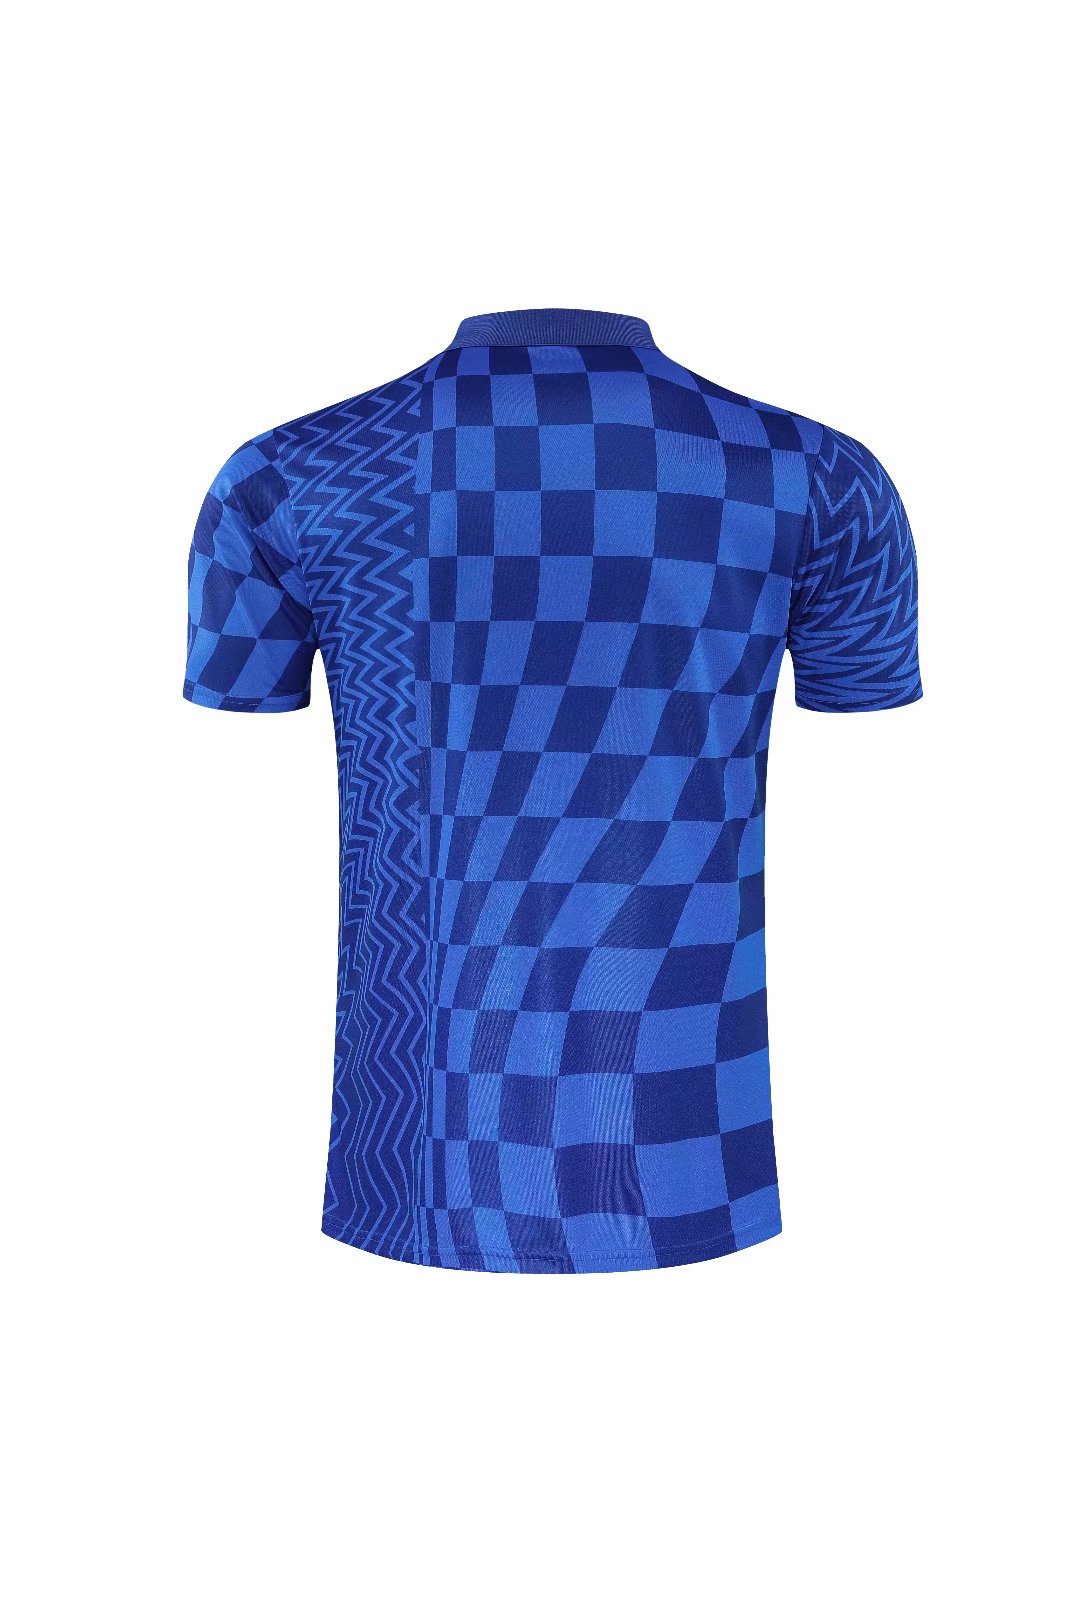 Chelsea Core Polo Shirt 2021/22